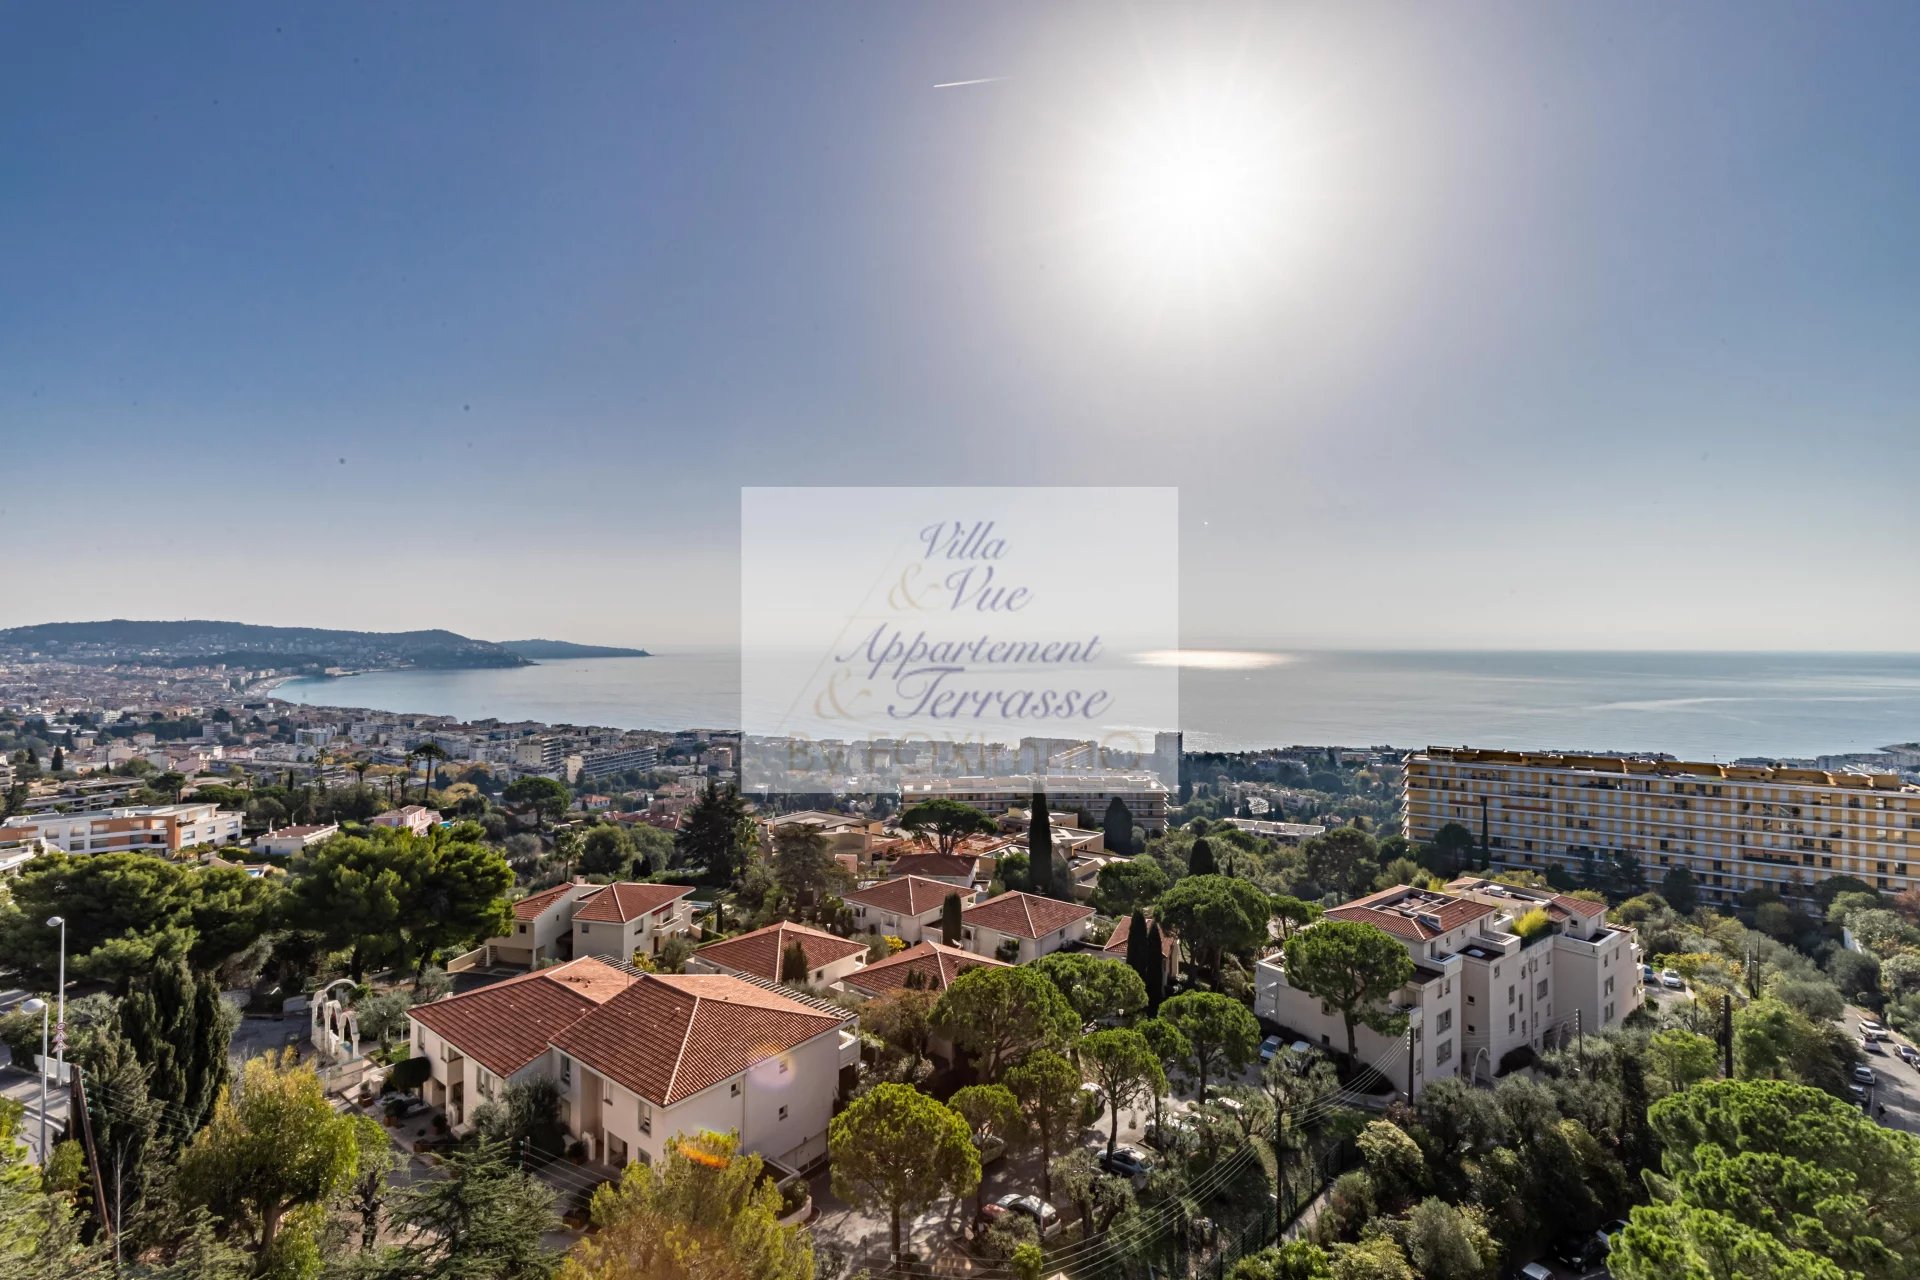 Abbaye de Roseland :Appartamento eccezionale con vista panoramica sul mare e sulla città di Nizza